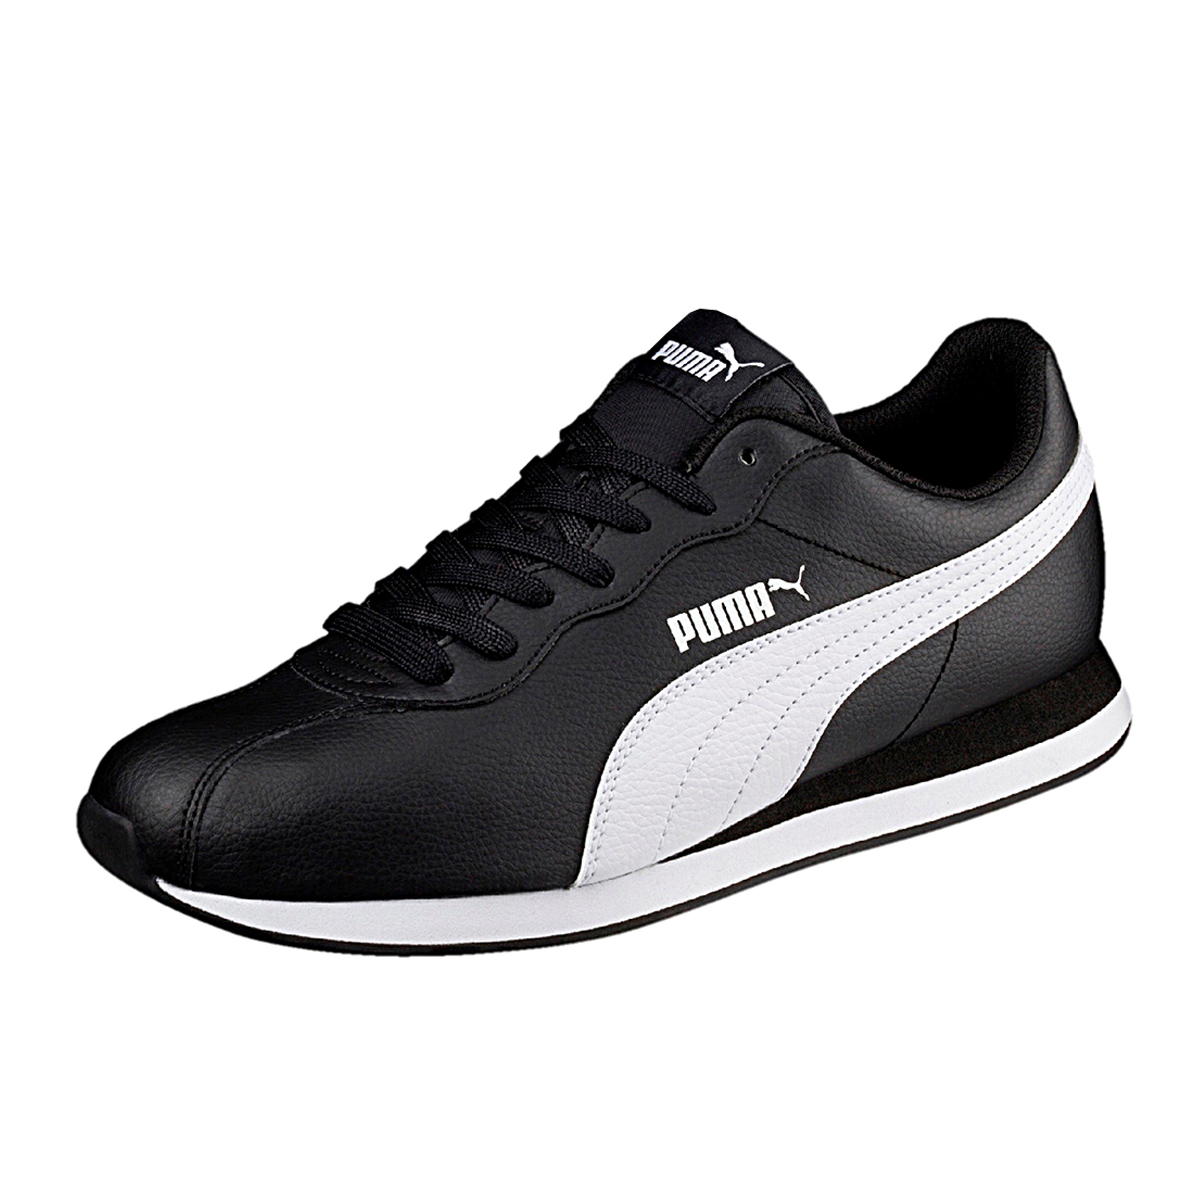 Puma Turin II Herren Sneaker Schuhe schwarz weiss 366962 01